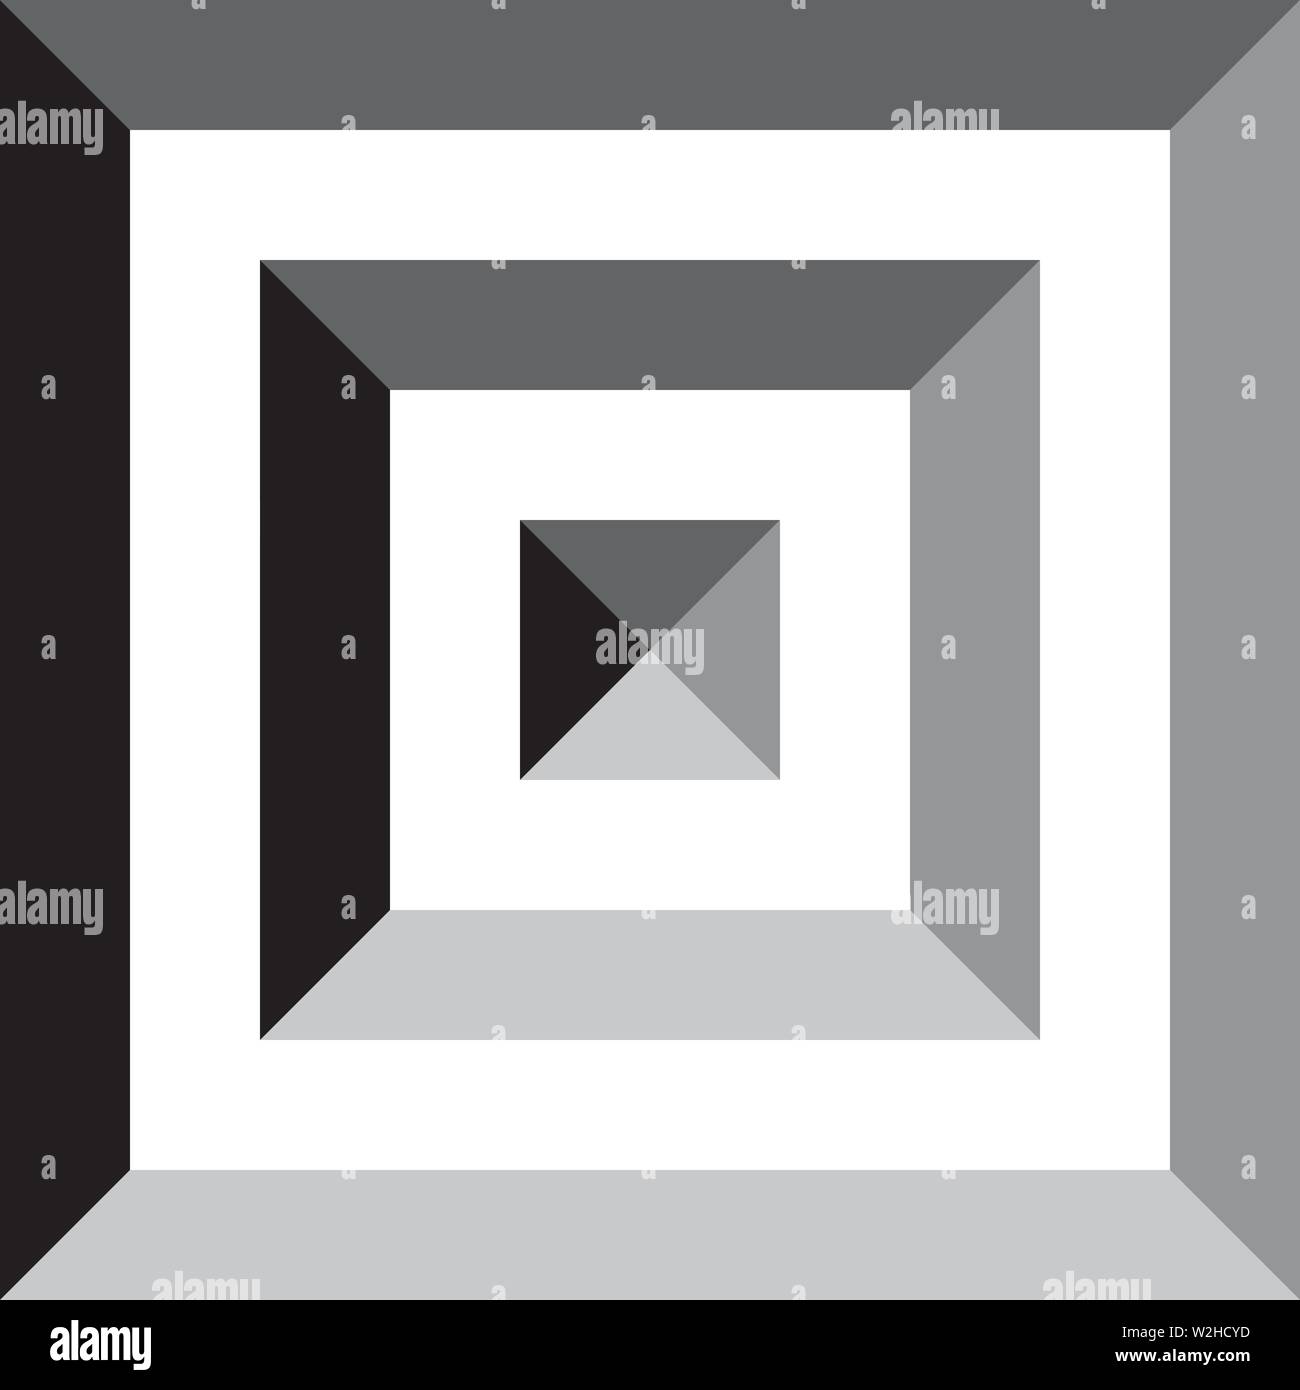 Square in square en pyramide carrée impression inspiré strukture abstract art déco coupe illustration sur fond transparent Illustration de Vecteur